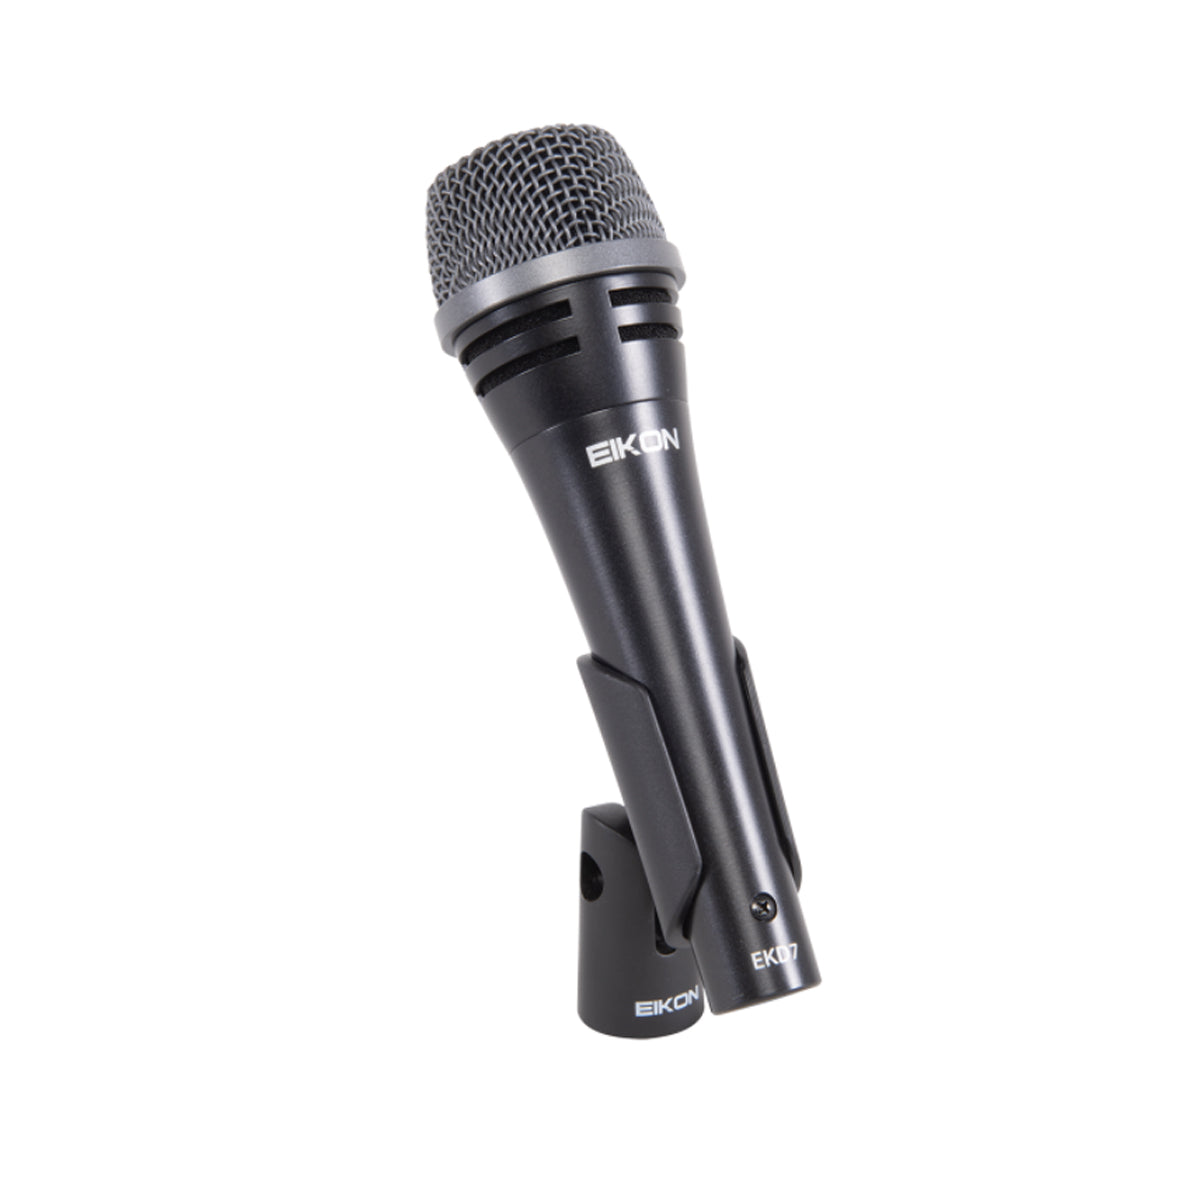 Eikon EKD7 Dynamic Microphone Vocal Handheld Mic w/ Bag